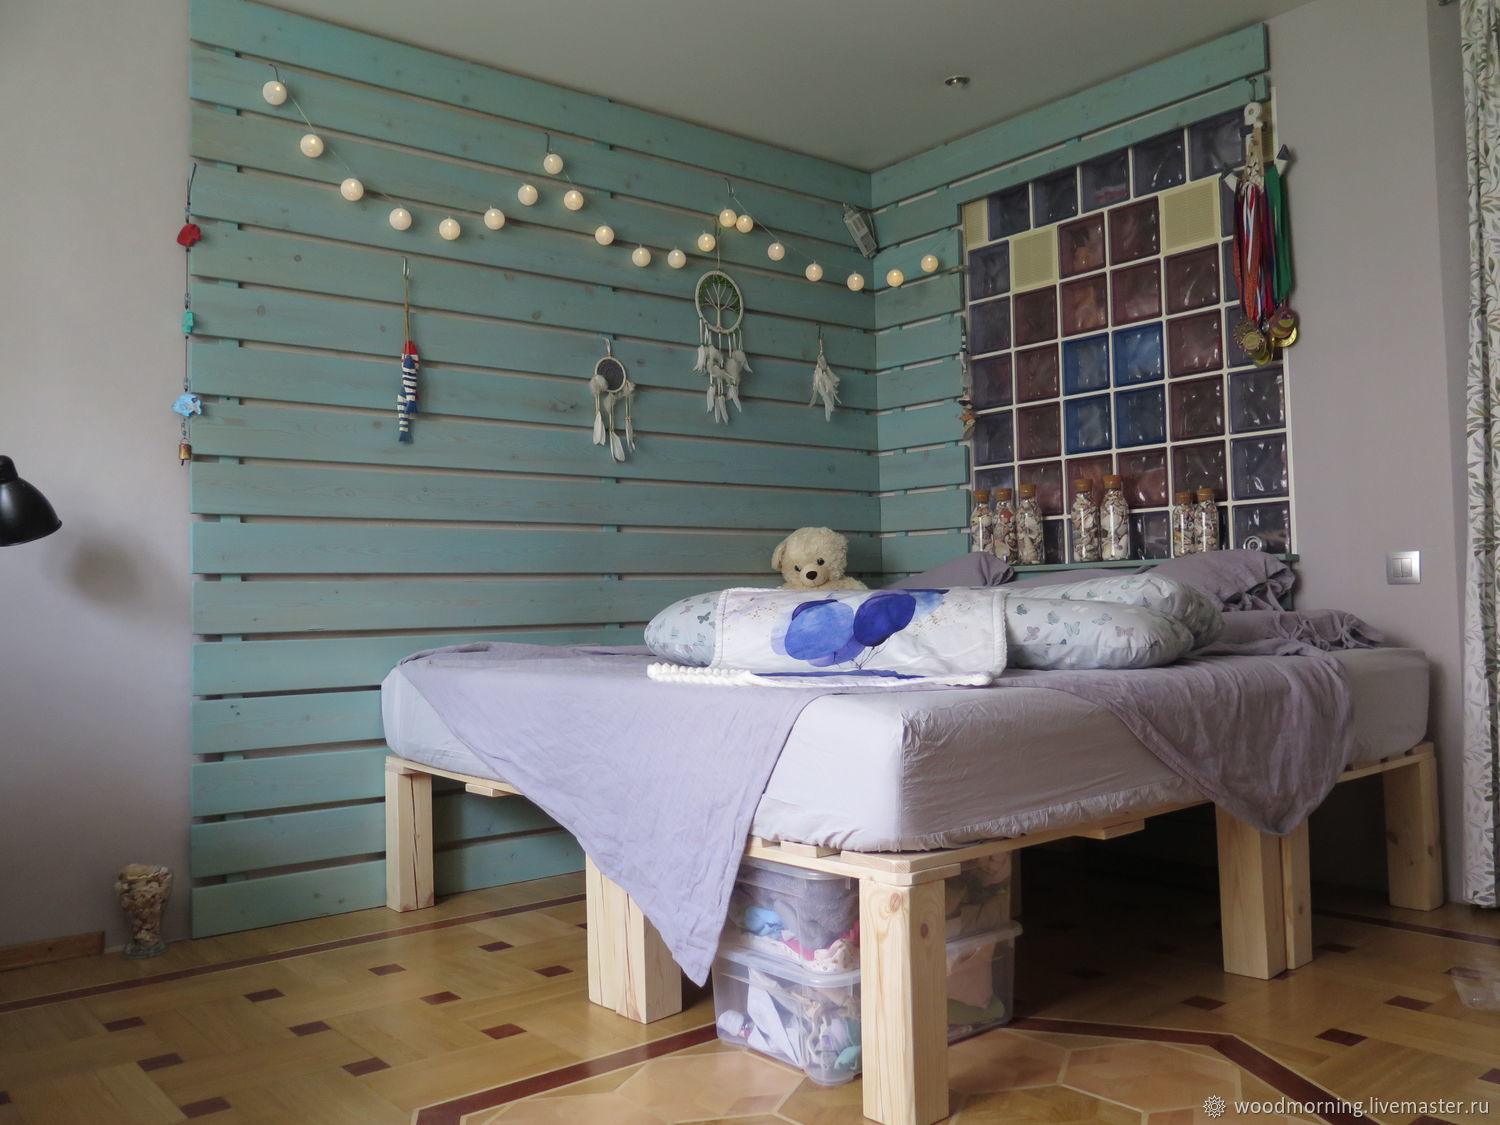 Кровать из поддонов с подсветкой: необычная мебель своими руками (25 фото)